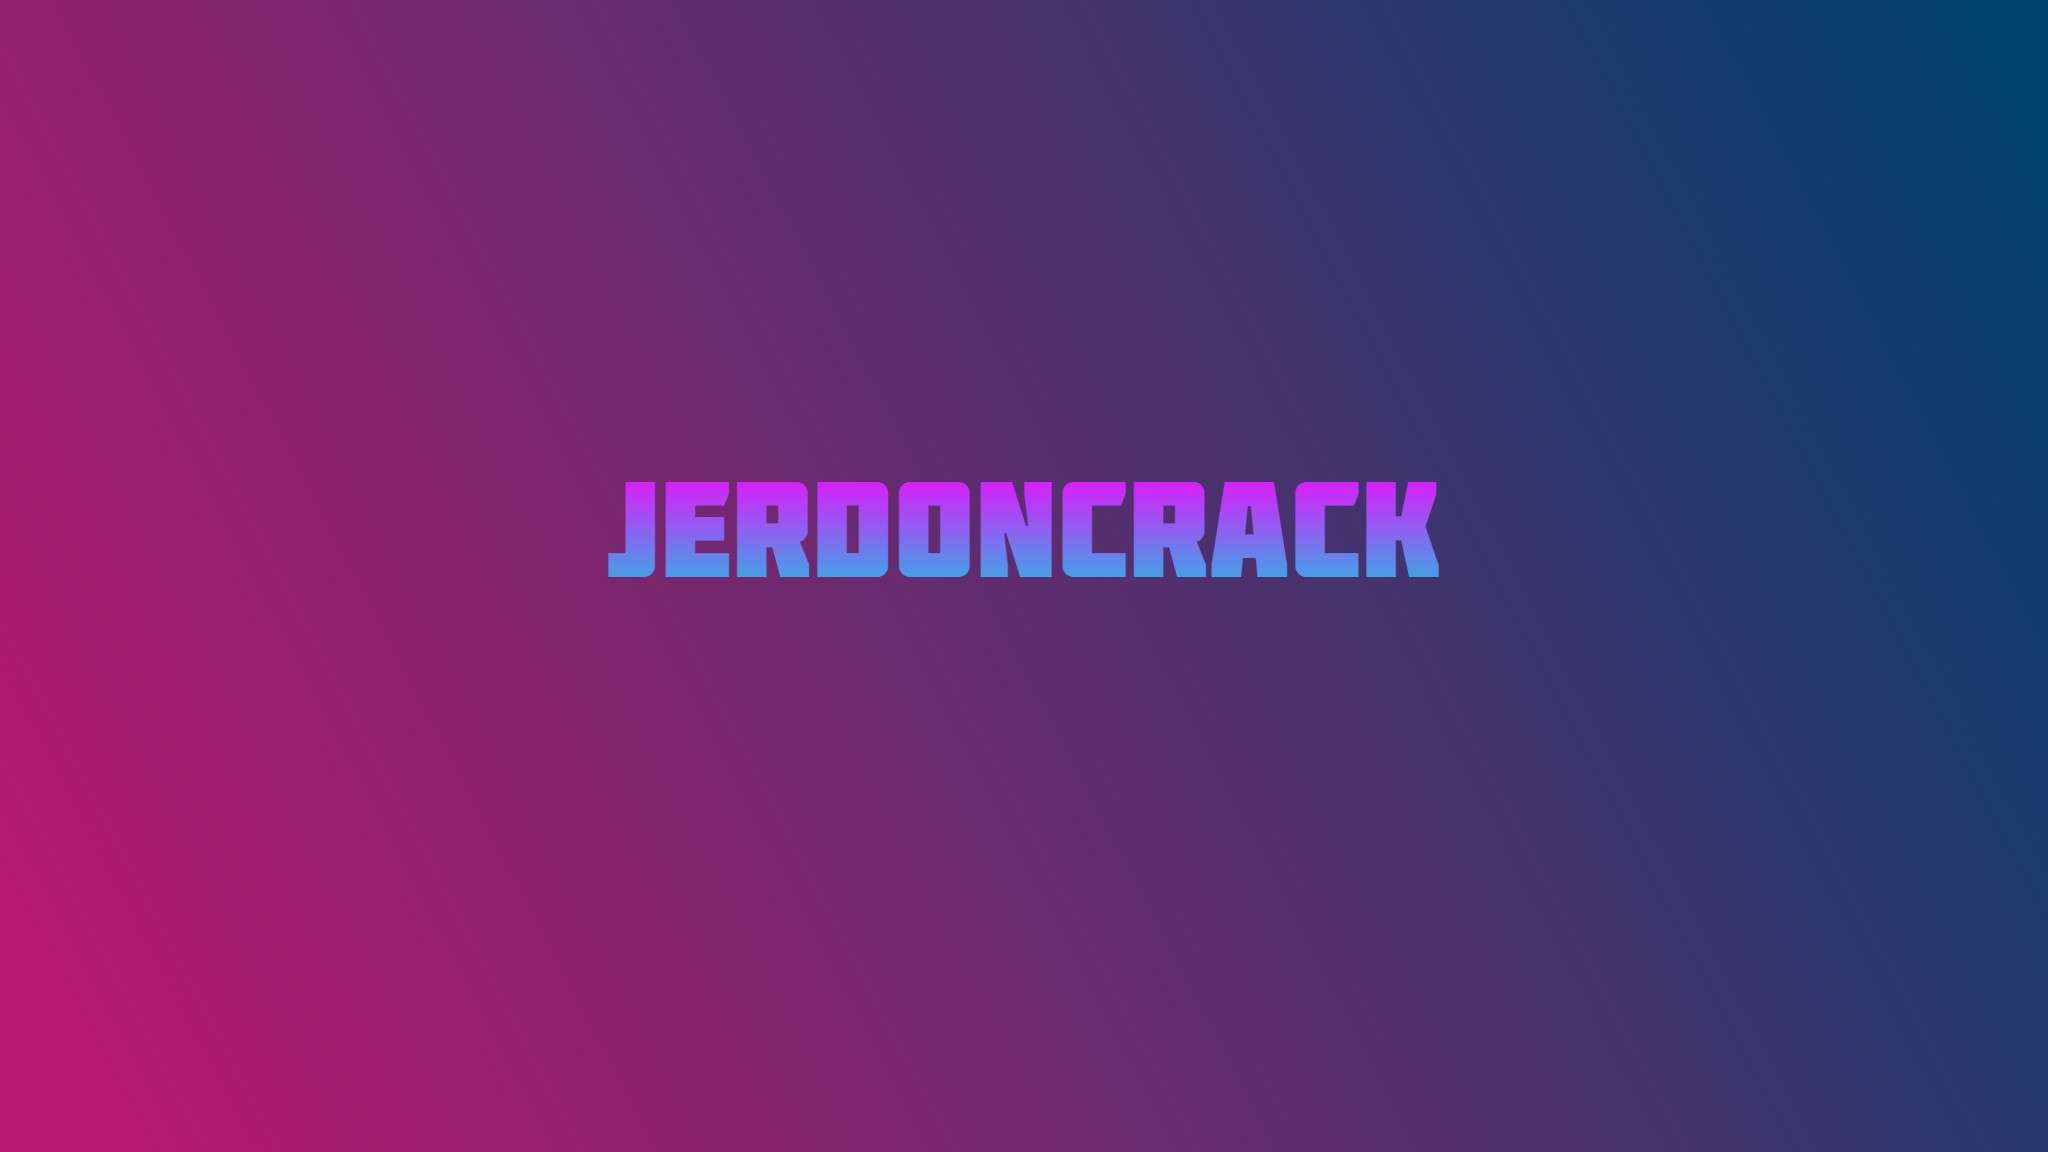 Jerdoncrack 16x by Jerdoncrack on PvPRP